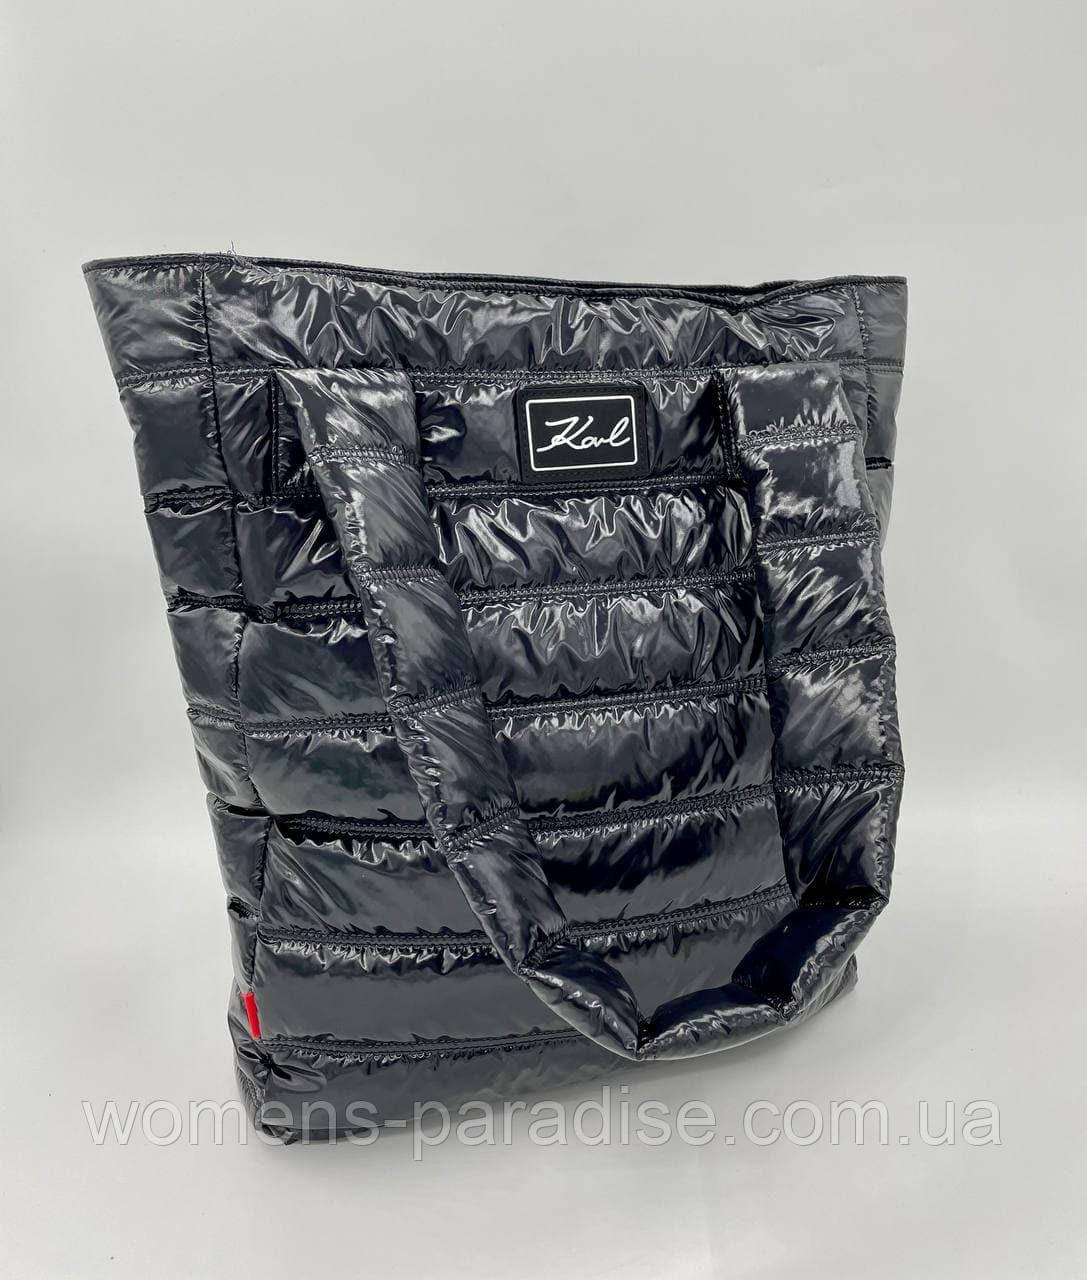 

Женская сумка шоппер стеганая цвет черный